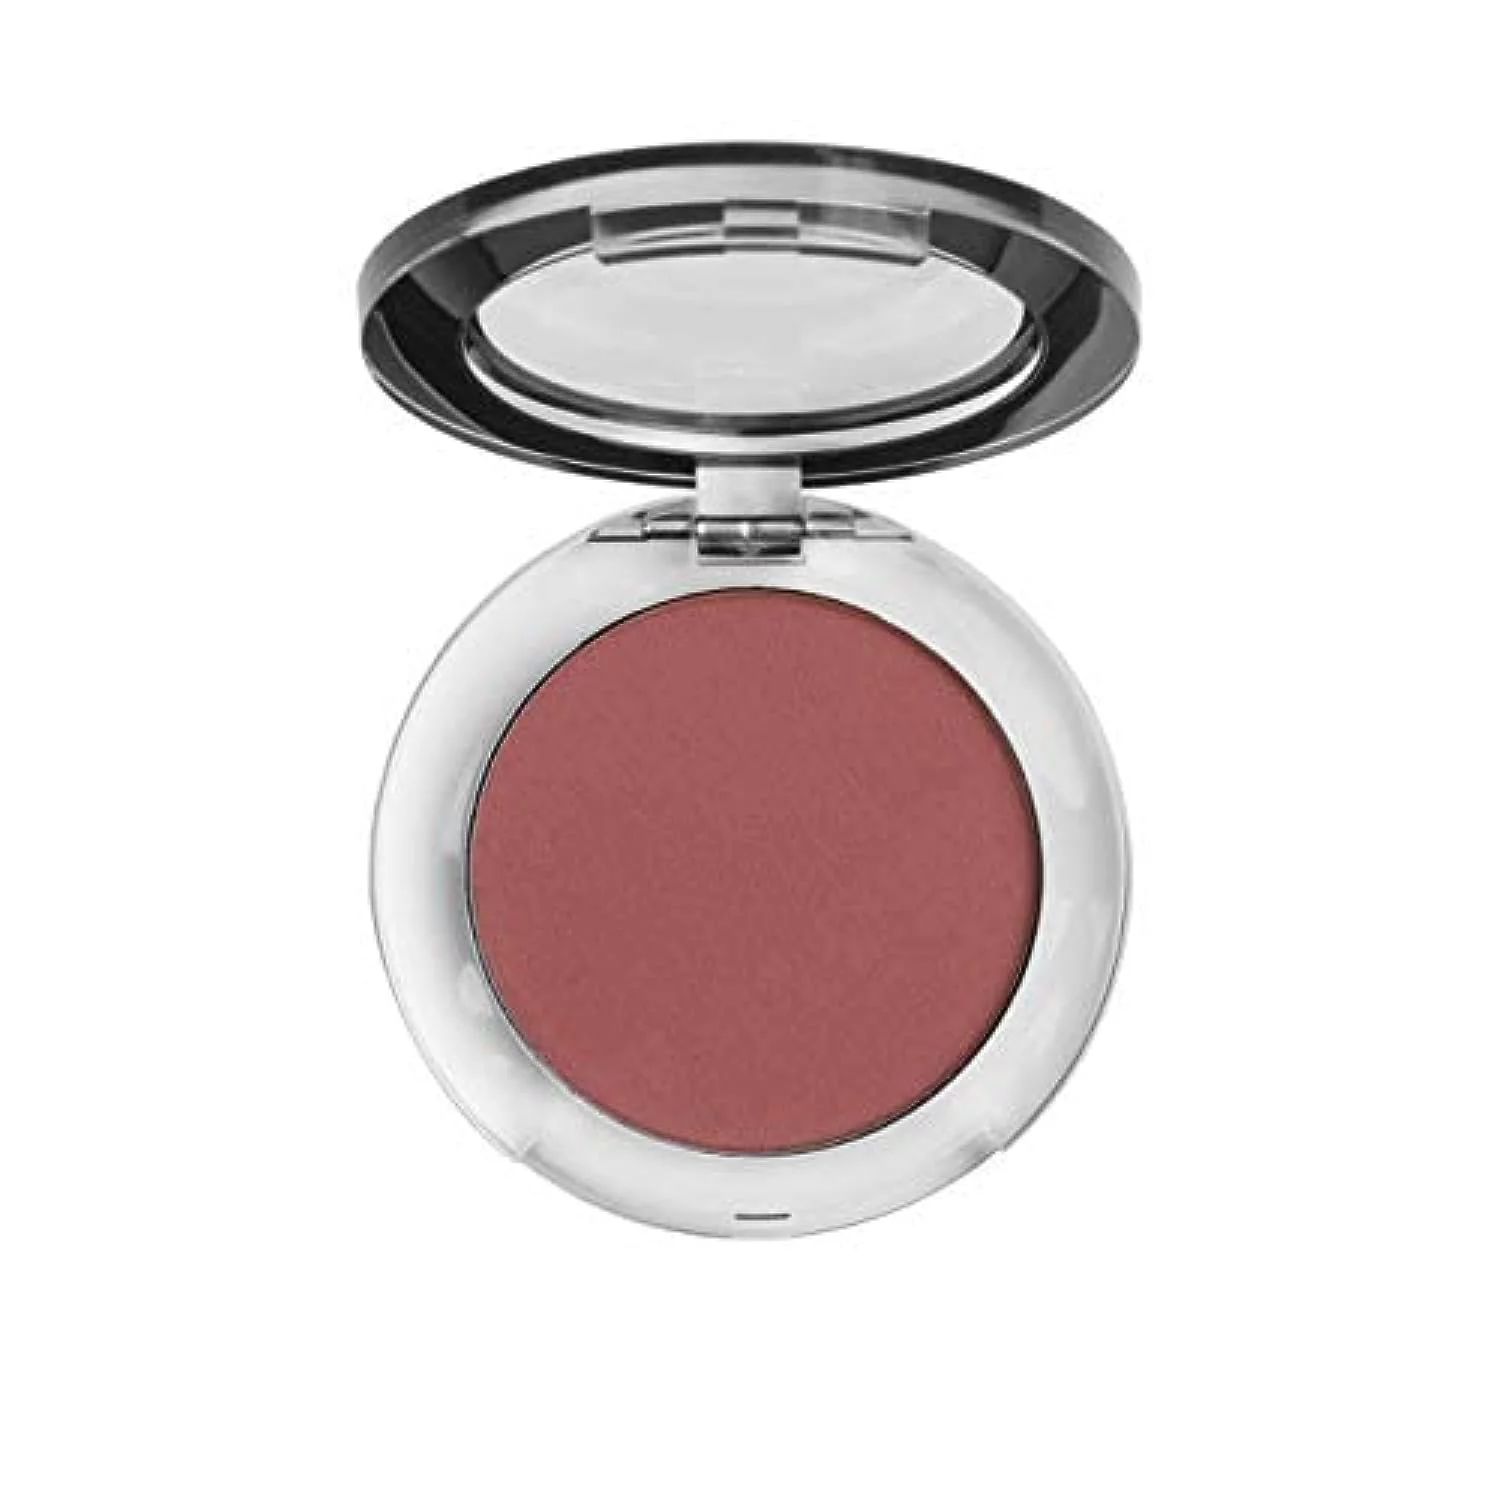 STUDIOMAKEUP Soft Blend Cheek Blush Makeup (Wildflower) – Beauty Blush Powder for Face – Perf... | Walmart (US)